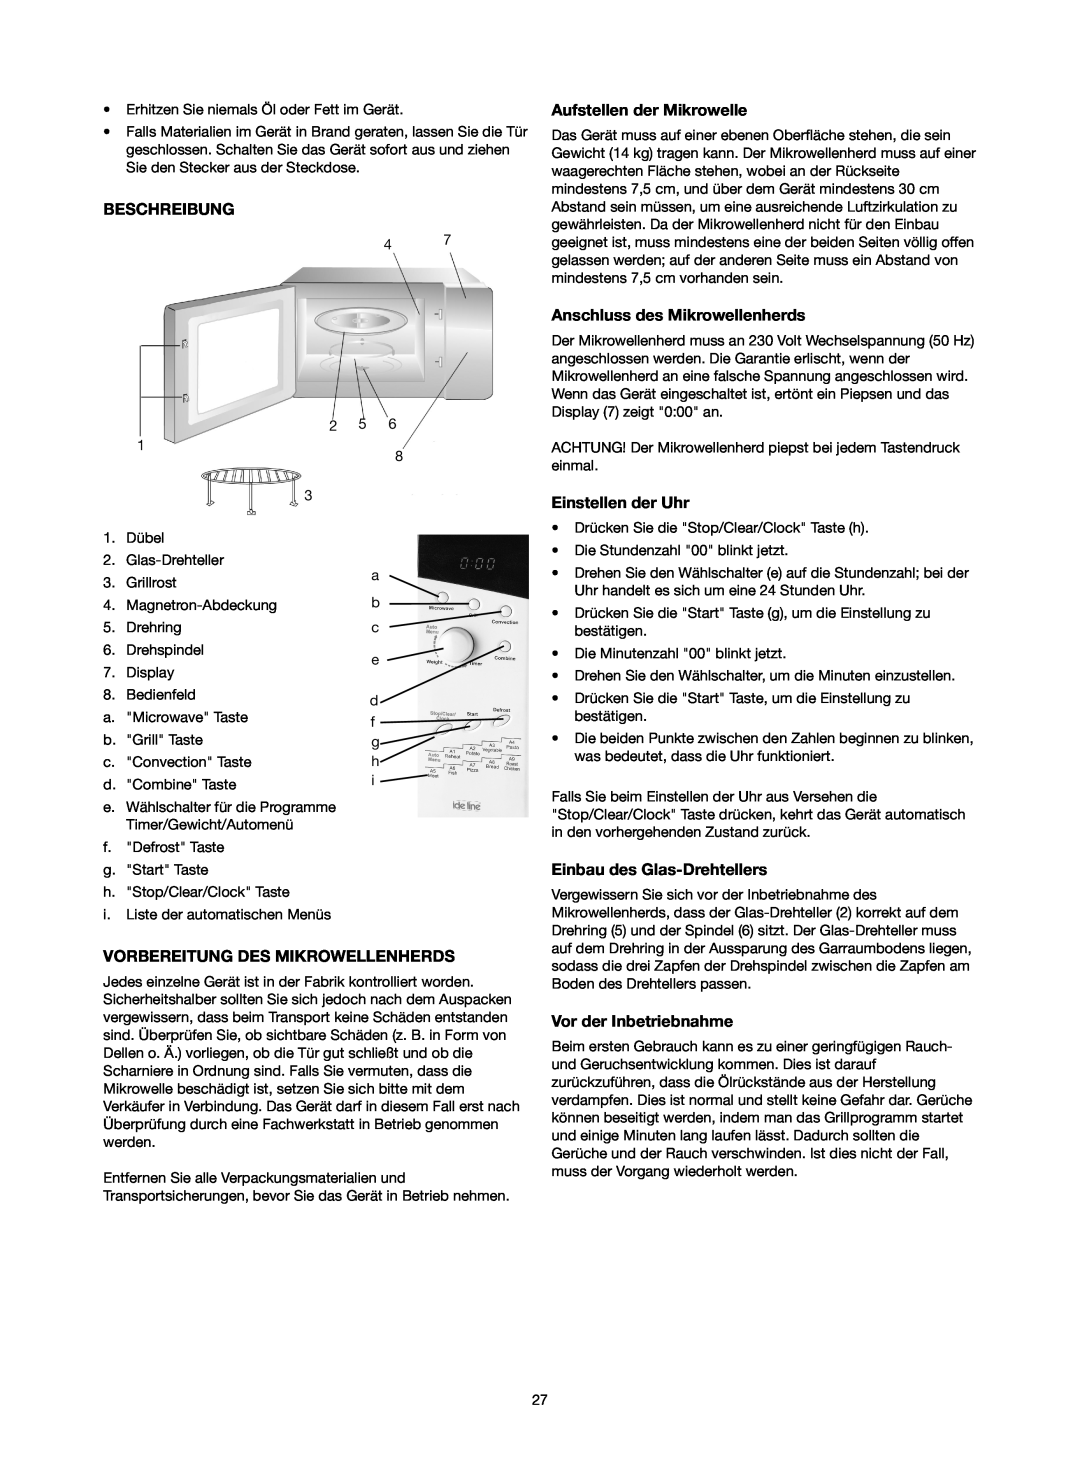 Melissa 753-130 manual Beschreibung, Anschluss des Mikrowellenherds, Einstellen der Uhr, Einbau des Glas-Drehtellers 